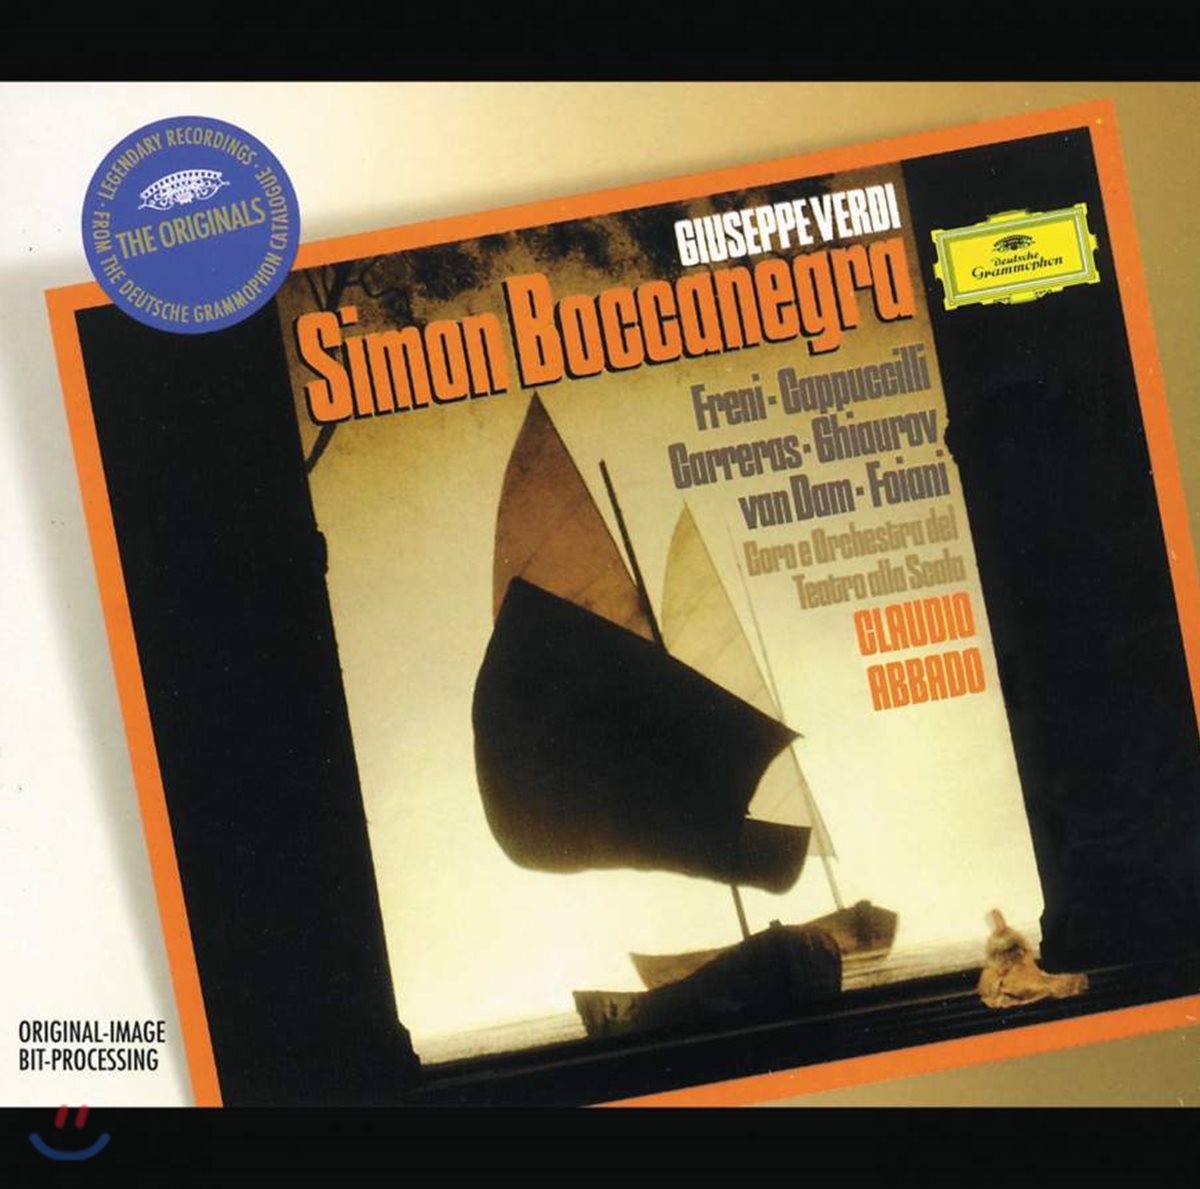 Claudio Abbado 베르디: 시몬 보카네그라 (Verdi: Simon Boccanegra)